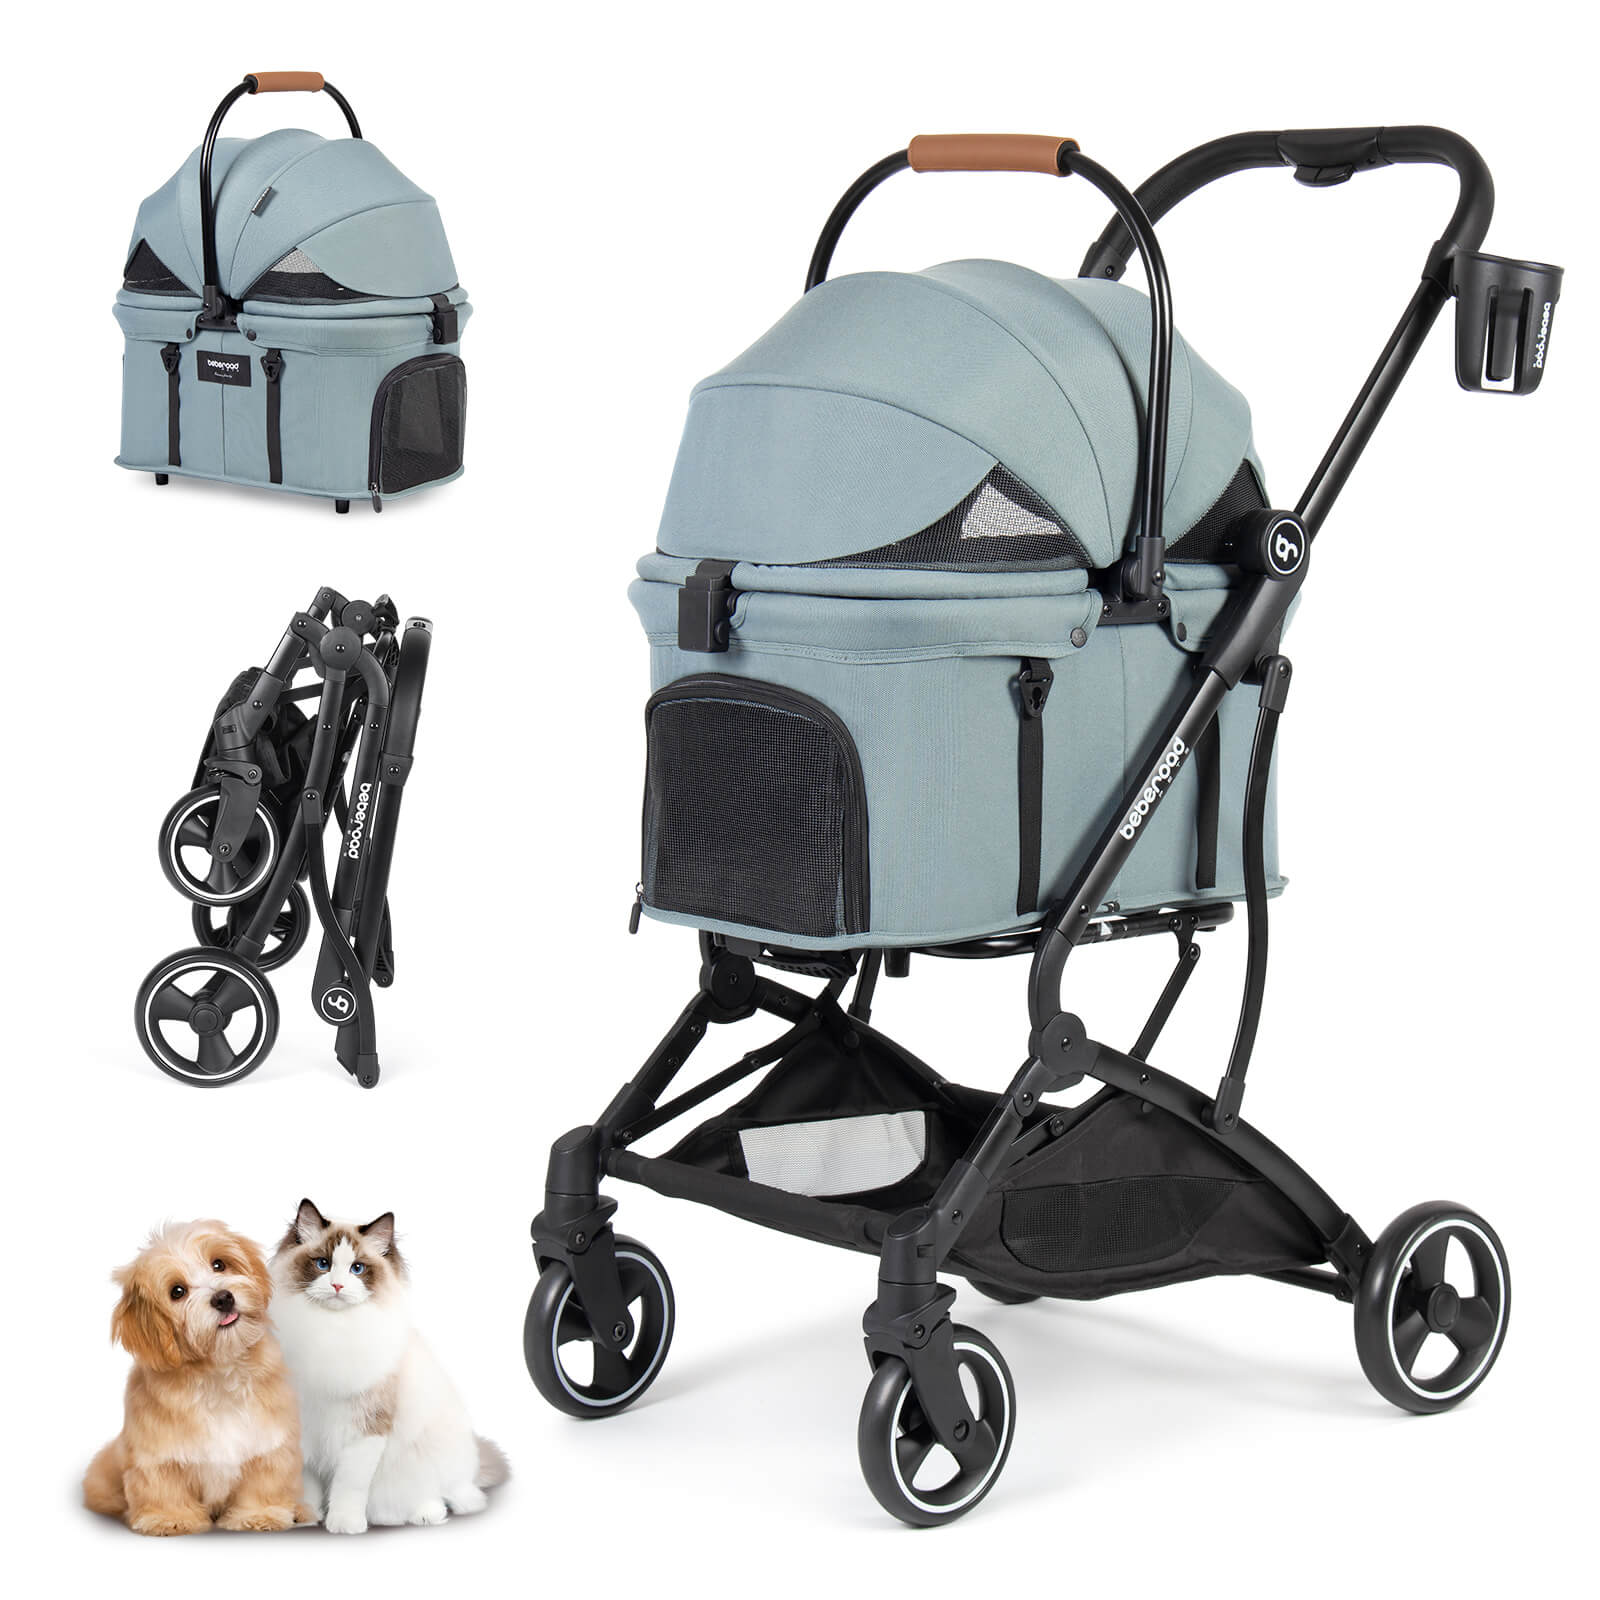 T3 3-in-1 Pet Stroller